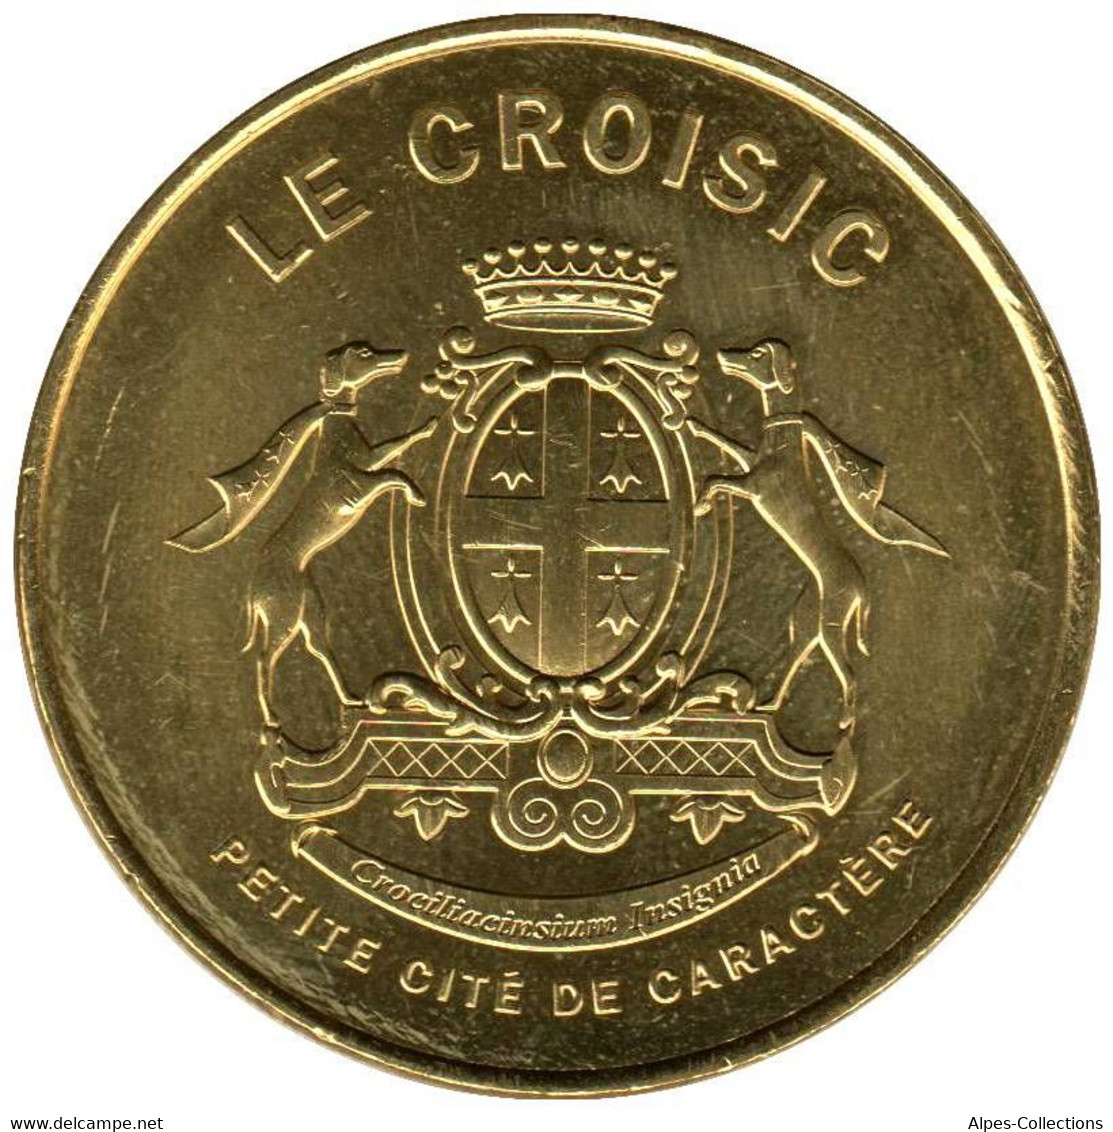 44-1901 - JETON TOURISTIQUE MDP - Le Croisic - Le Blason - 2014.4 - 2014